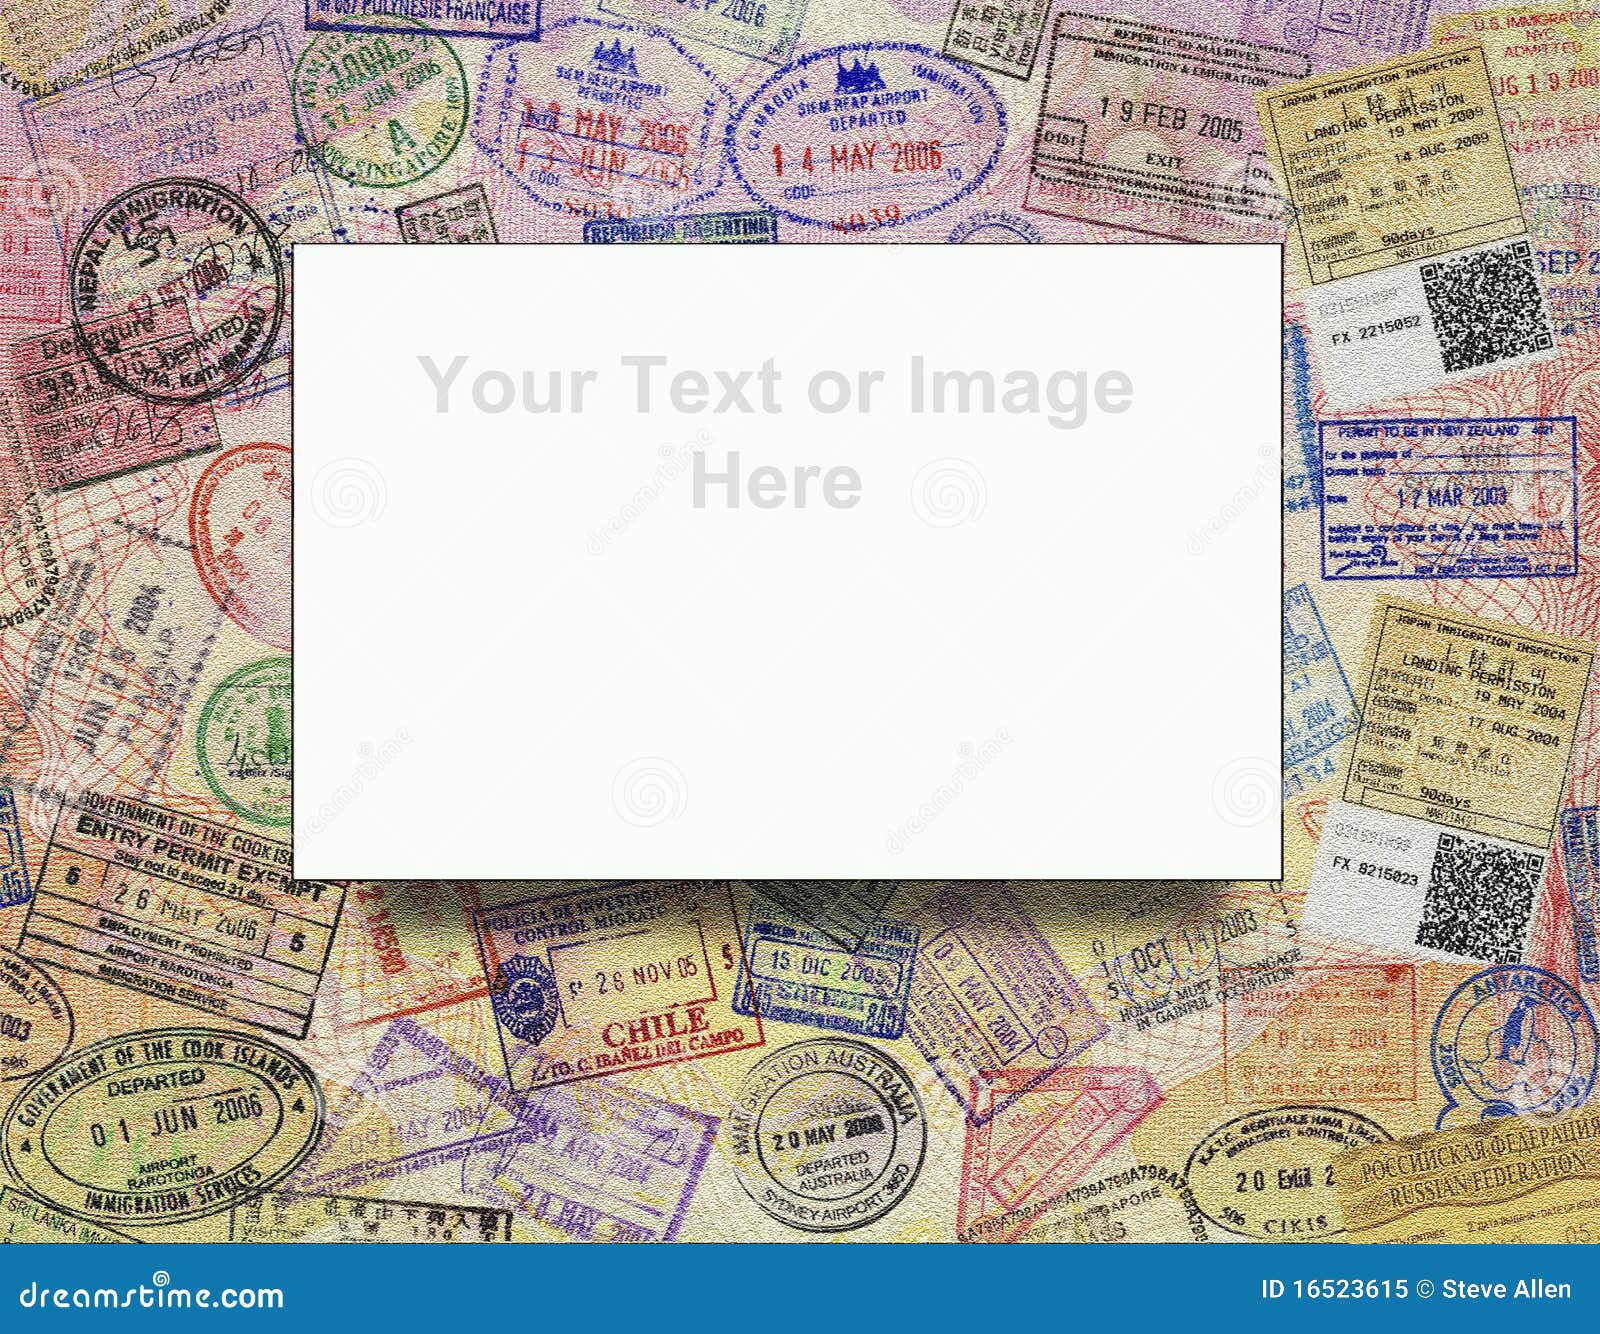 passport visas - background - add text